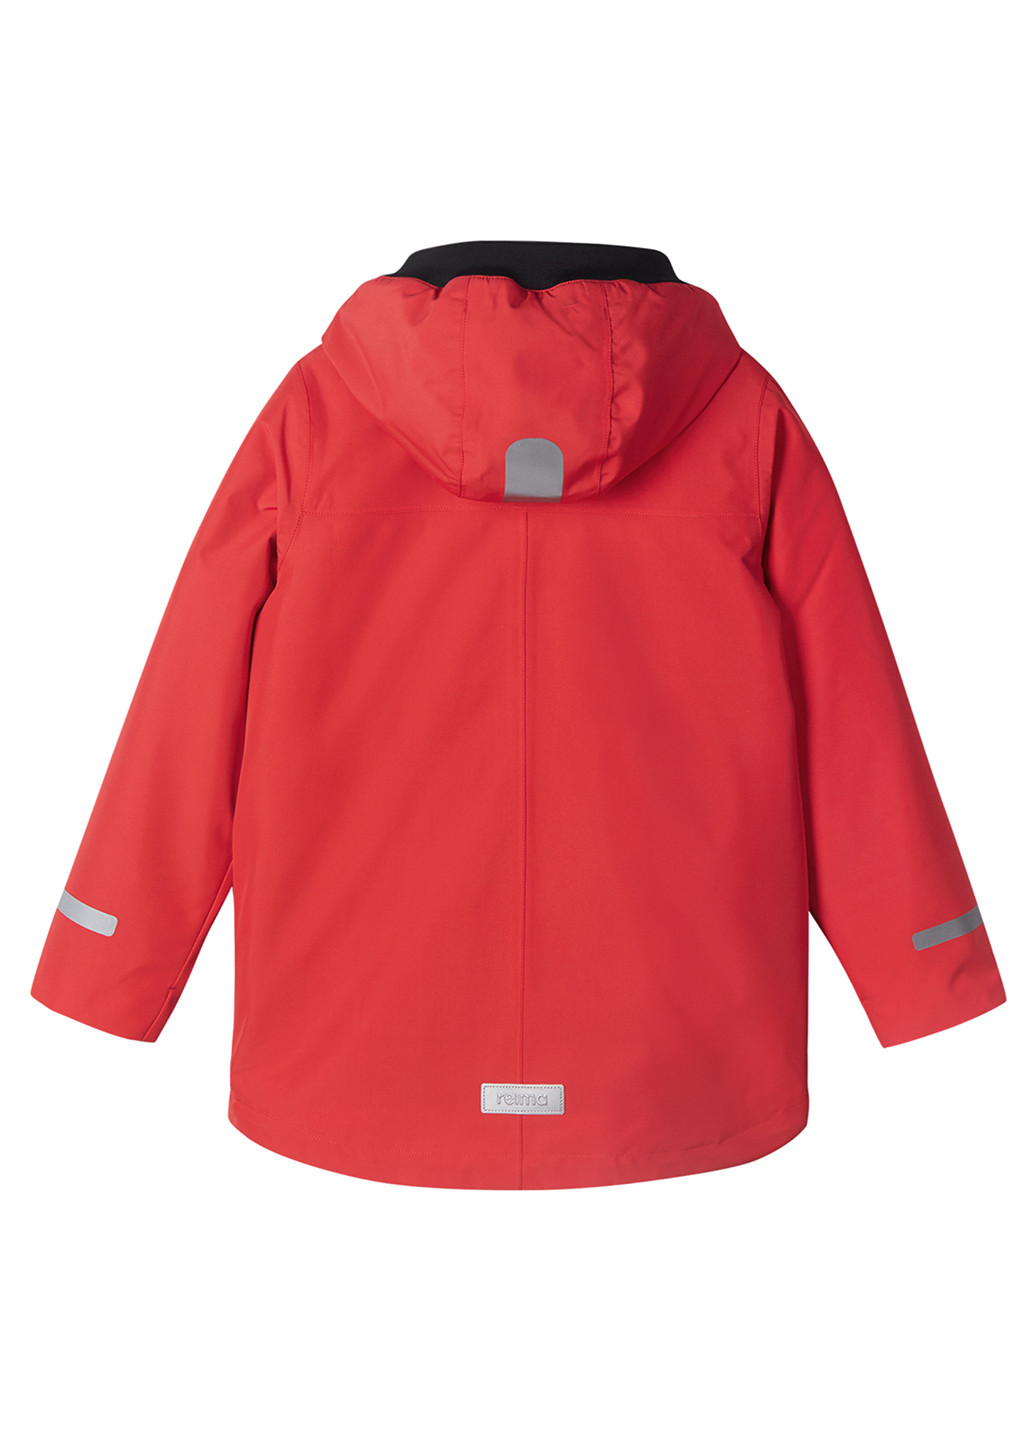 Красная зимняя куртка 3в1 Reima Syddi